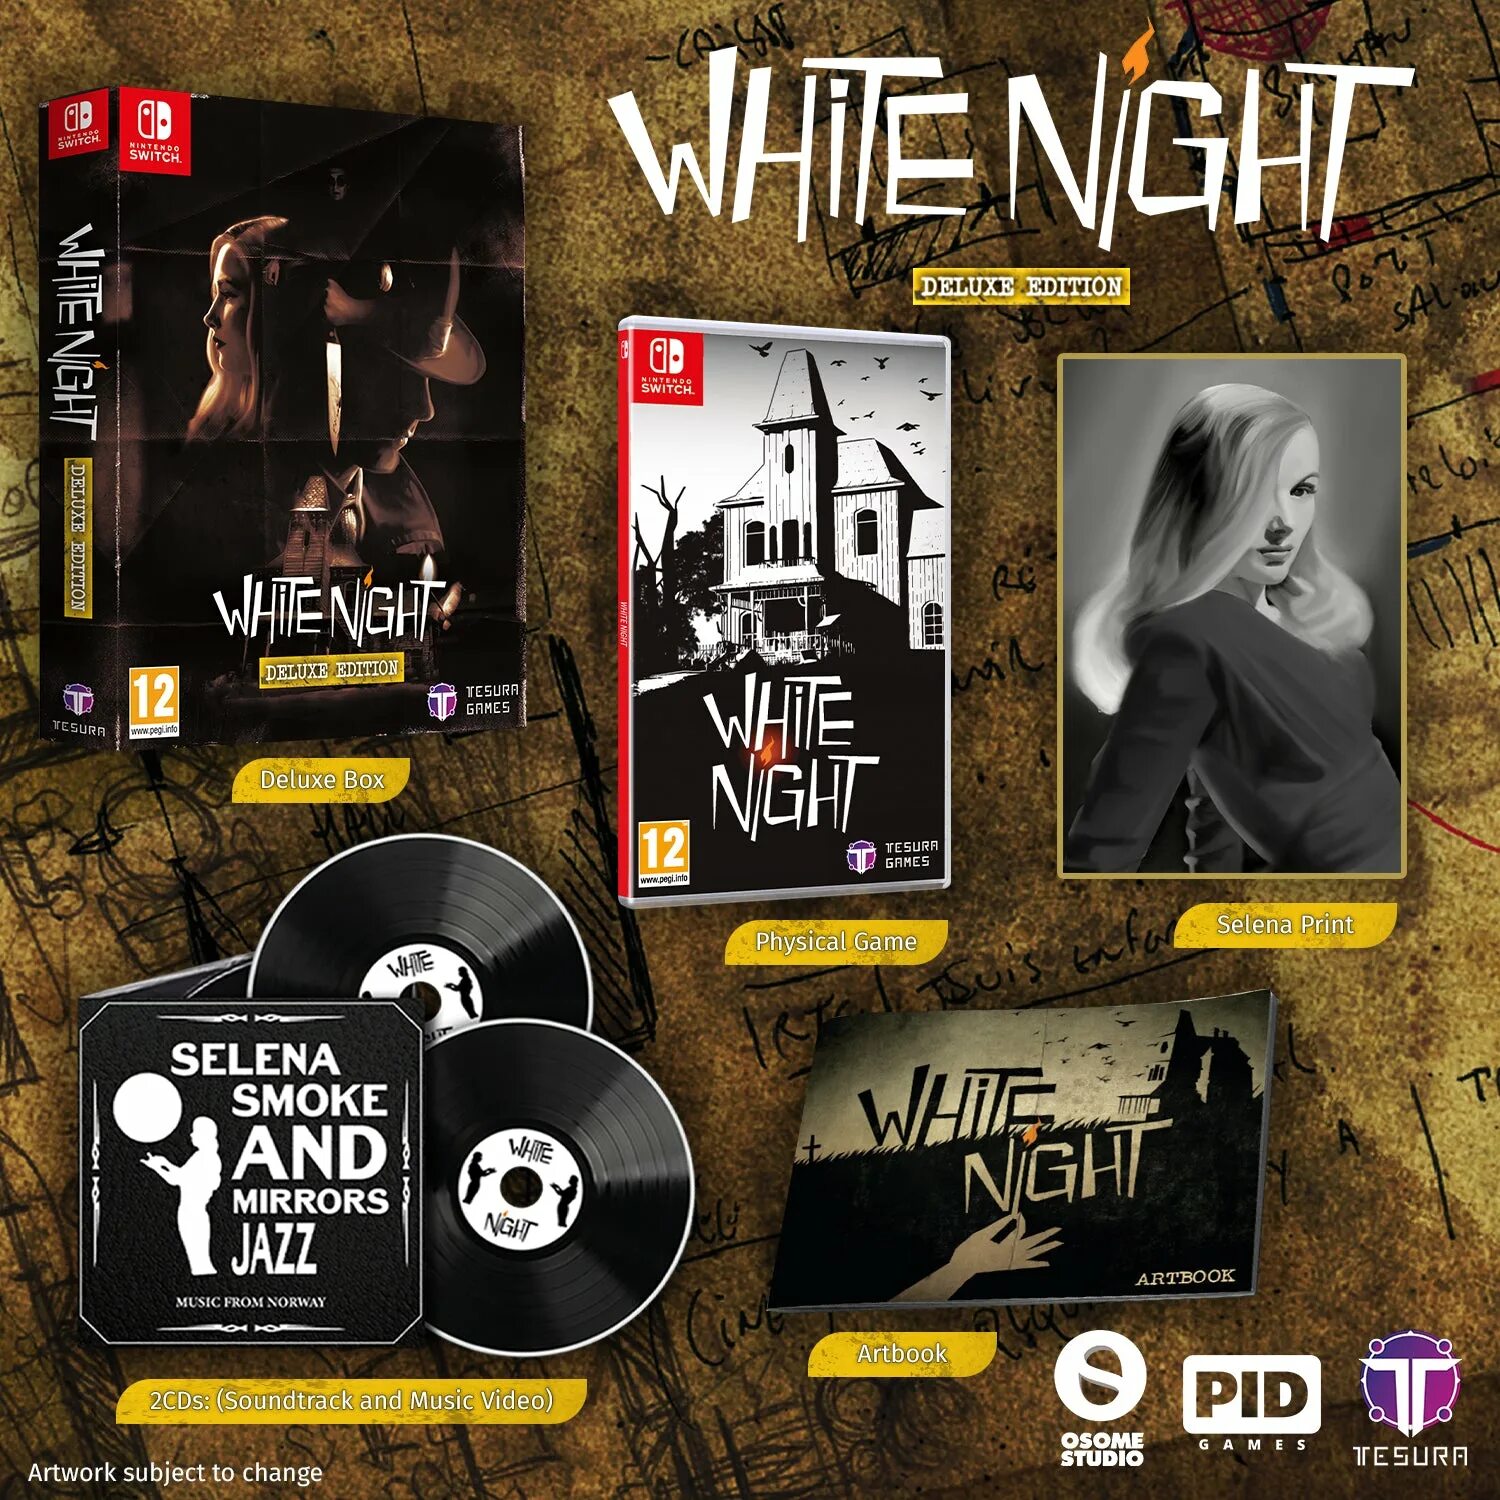 Zombie nintendo switch. Nintendo Zombie Night Terror - Deluxe Edition. White Night игра. Игры про зомби на Нинтендо свитч. White Night ЮВС.